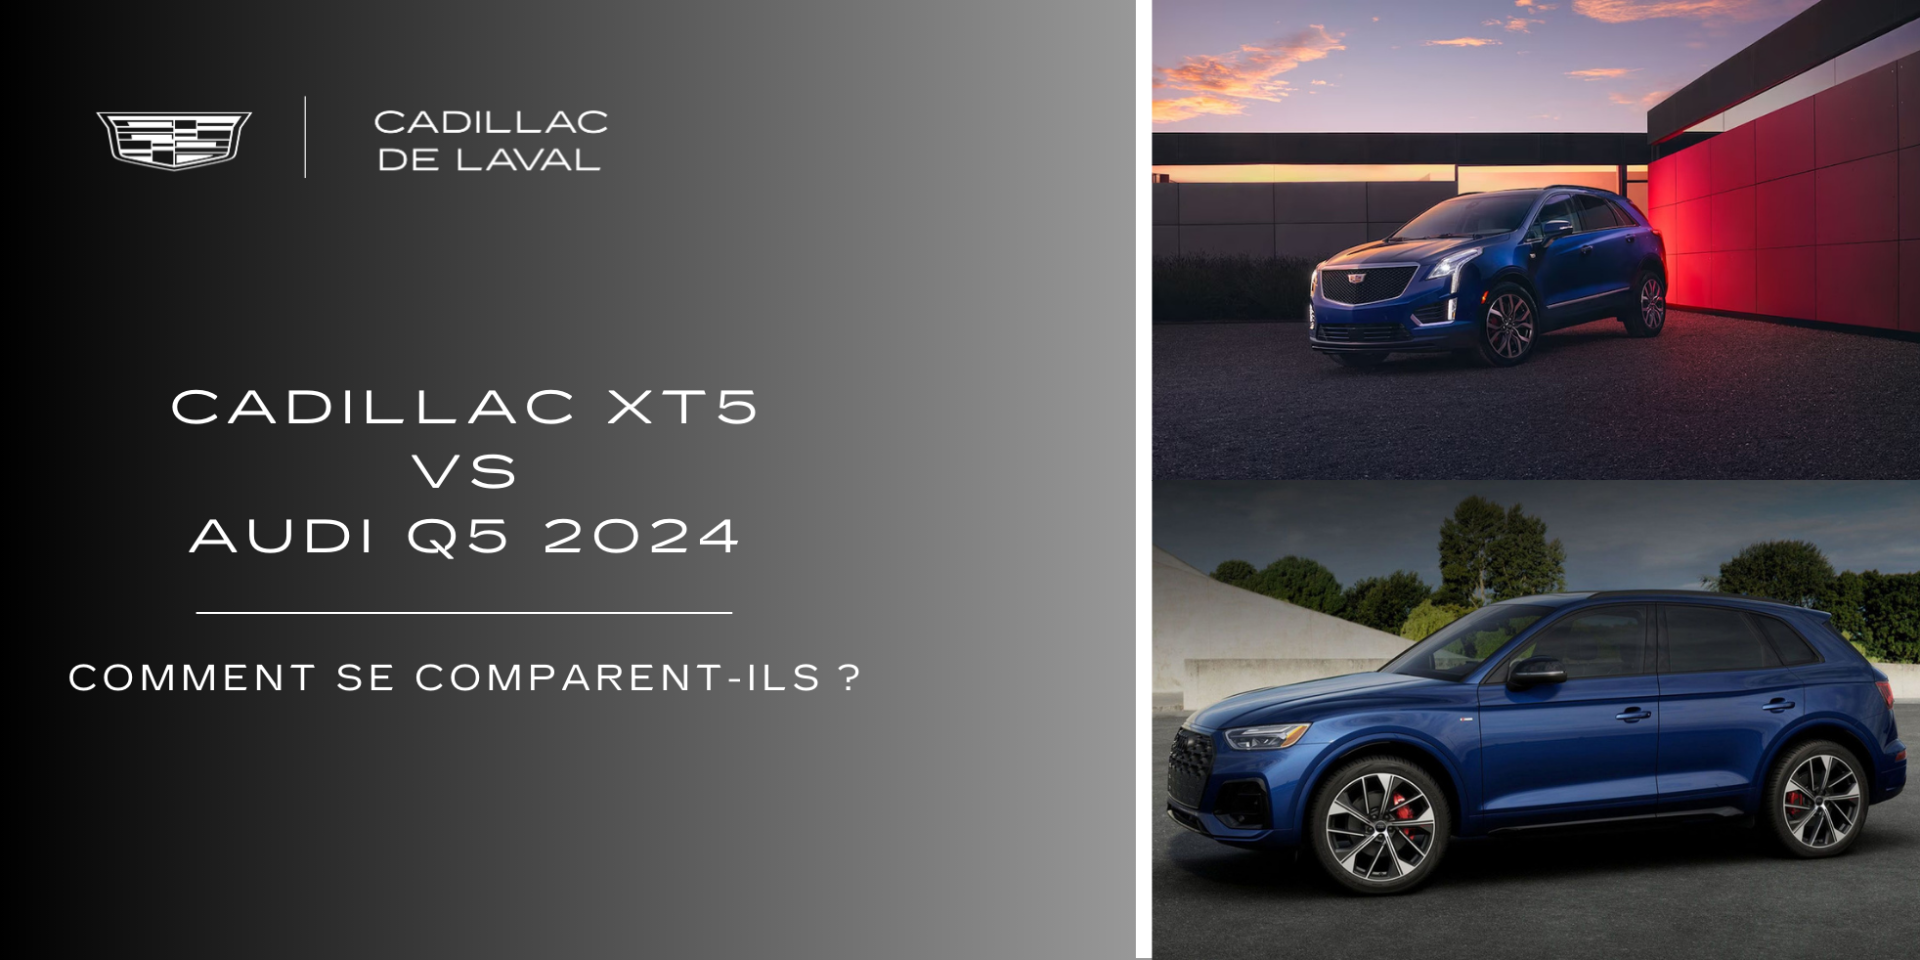 Cadillac XT5 vs Audi Q5 2024 : comment se comparent-ils ?